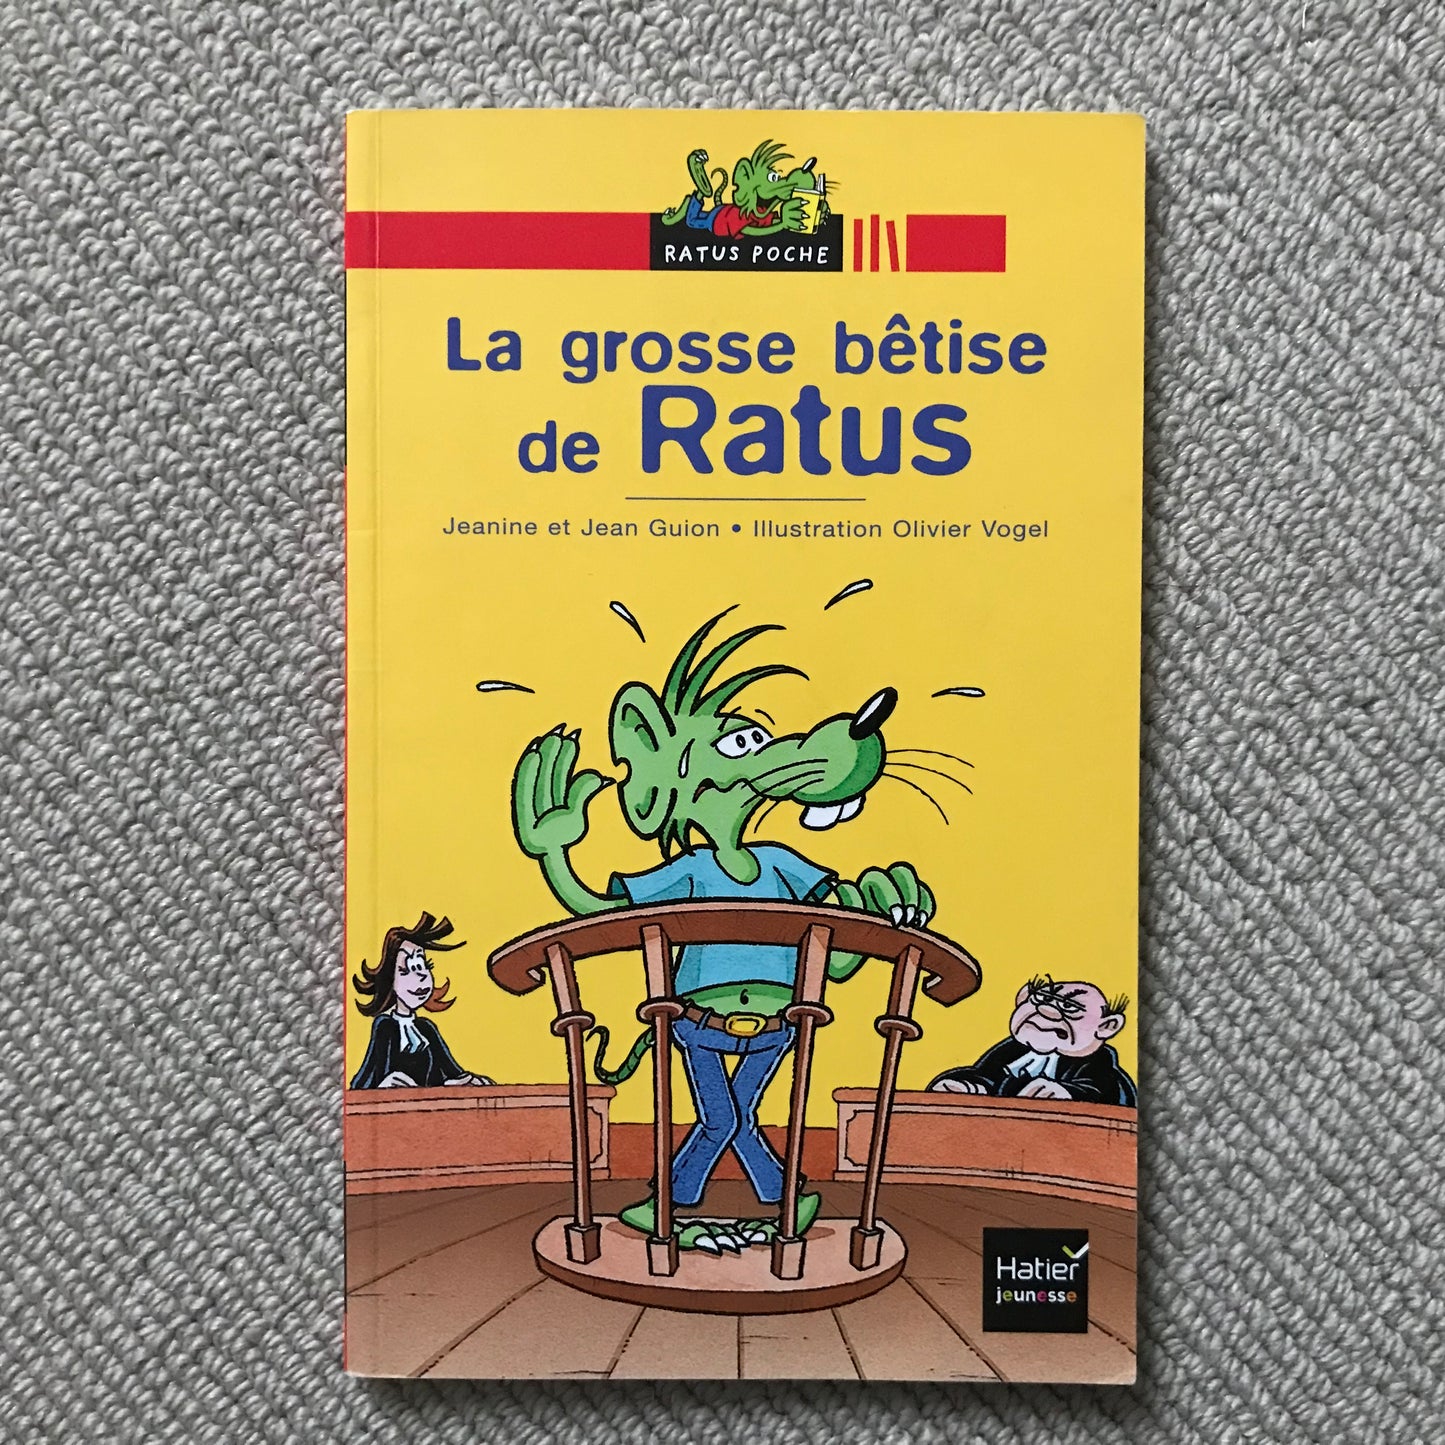 Ratus Poche: La grosse bêtise de Ratus - J. & J. Guion